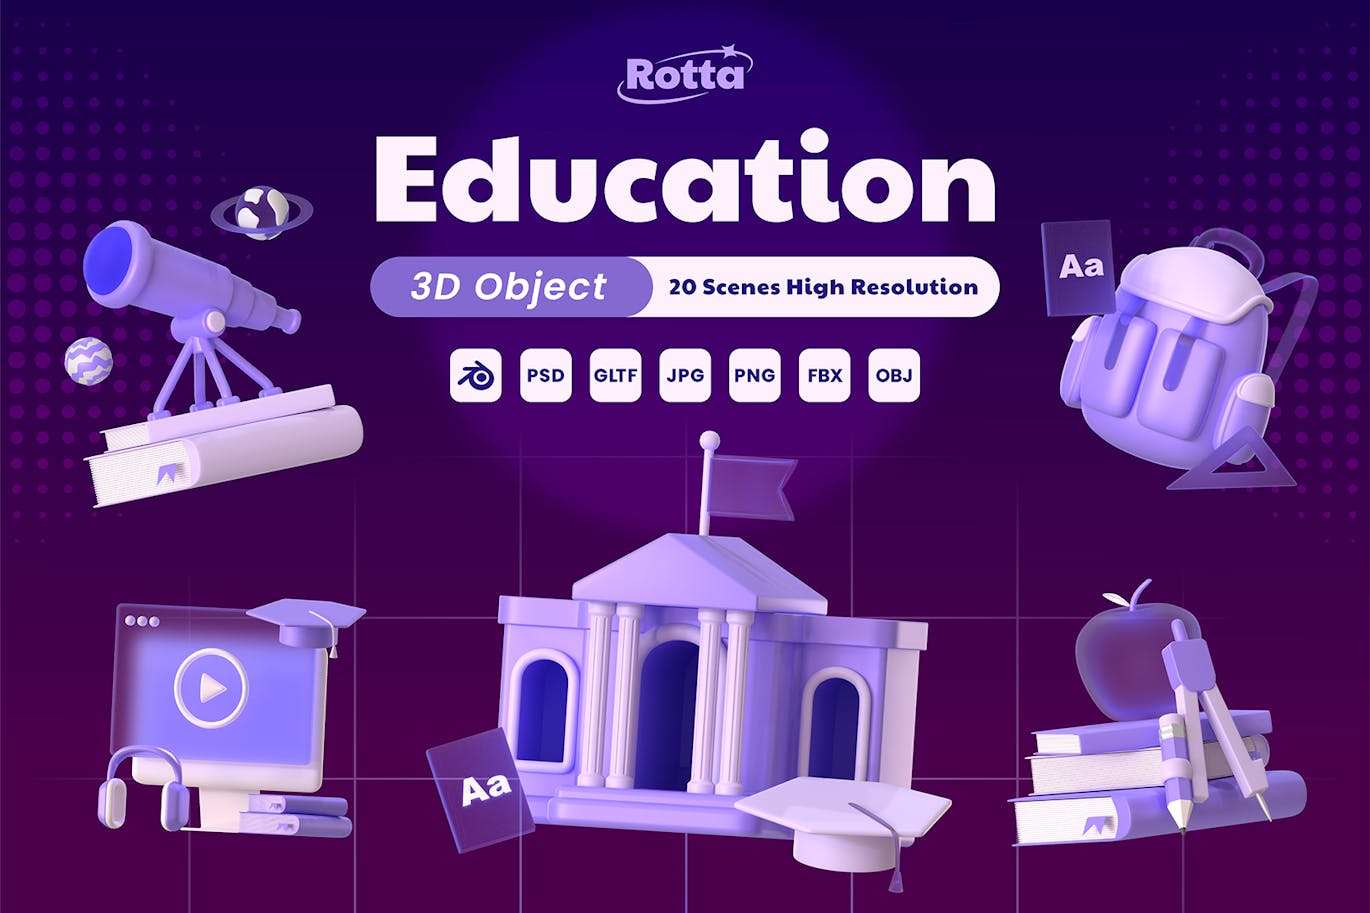 教育 3D 对象 (BLEND, GLTF, OBJ, FBX, PSD, PNG, JPG)